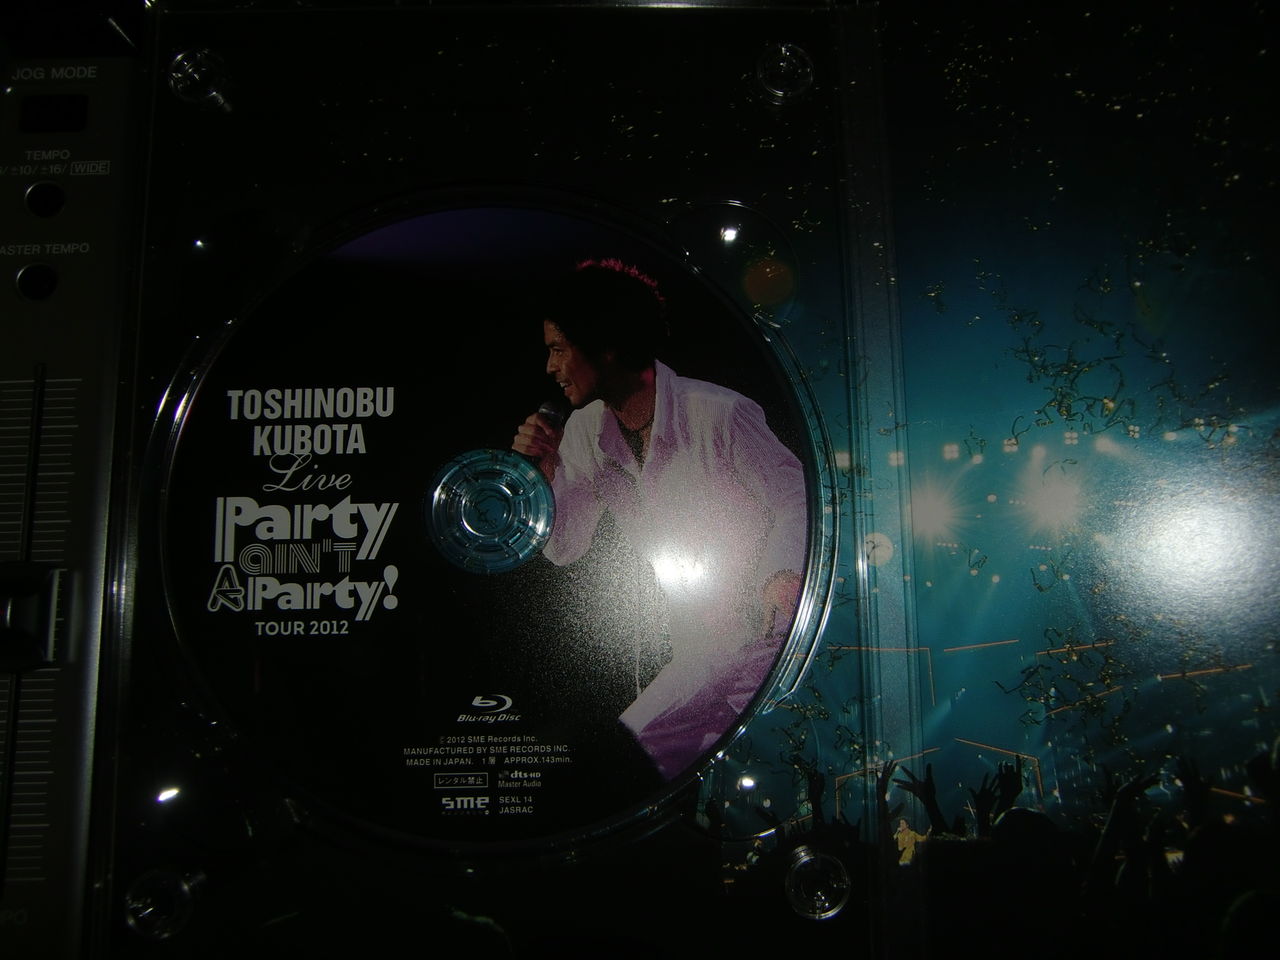 久保田利伸 25th Anniversary Toshinobu Kubota Concert Tour 12 Party Ain T A Party Blu Ray Review Flavor Of R B Hiphop